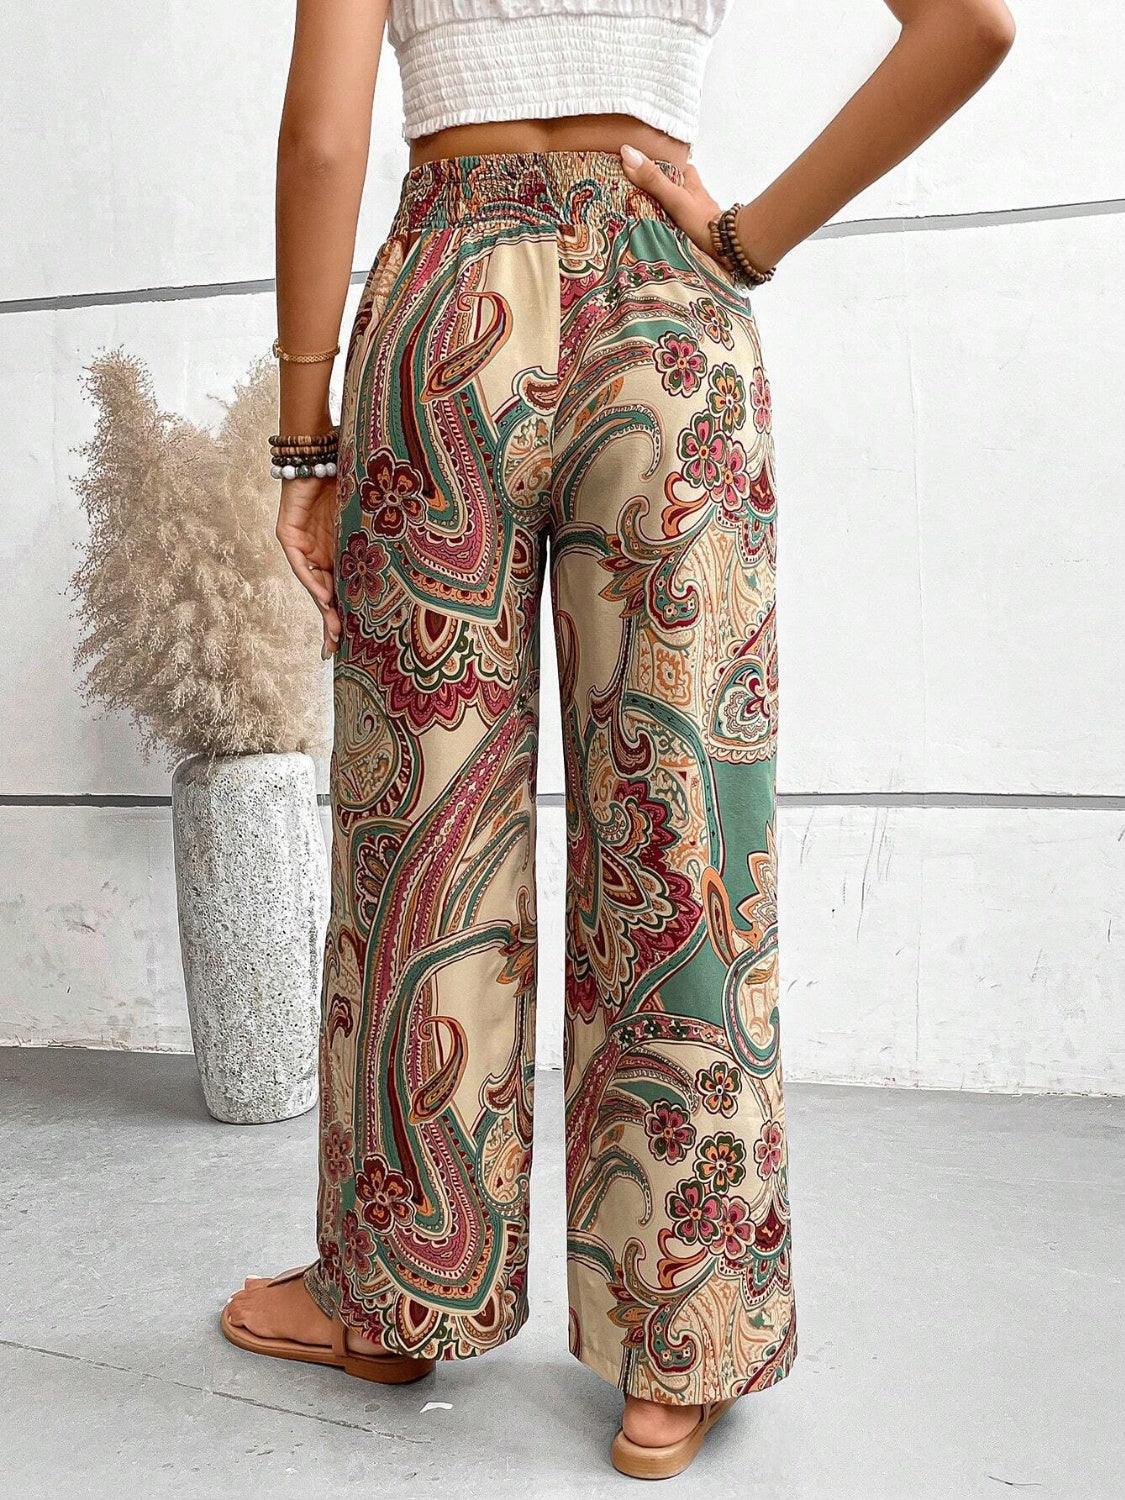 Bona Fide Fashion - Printed Wide Leg Pants - Women Fashion - Bona Fide Fashion